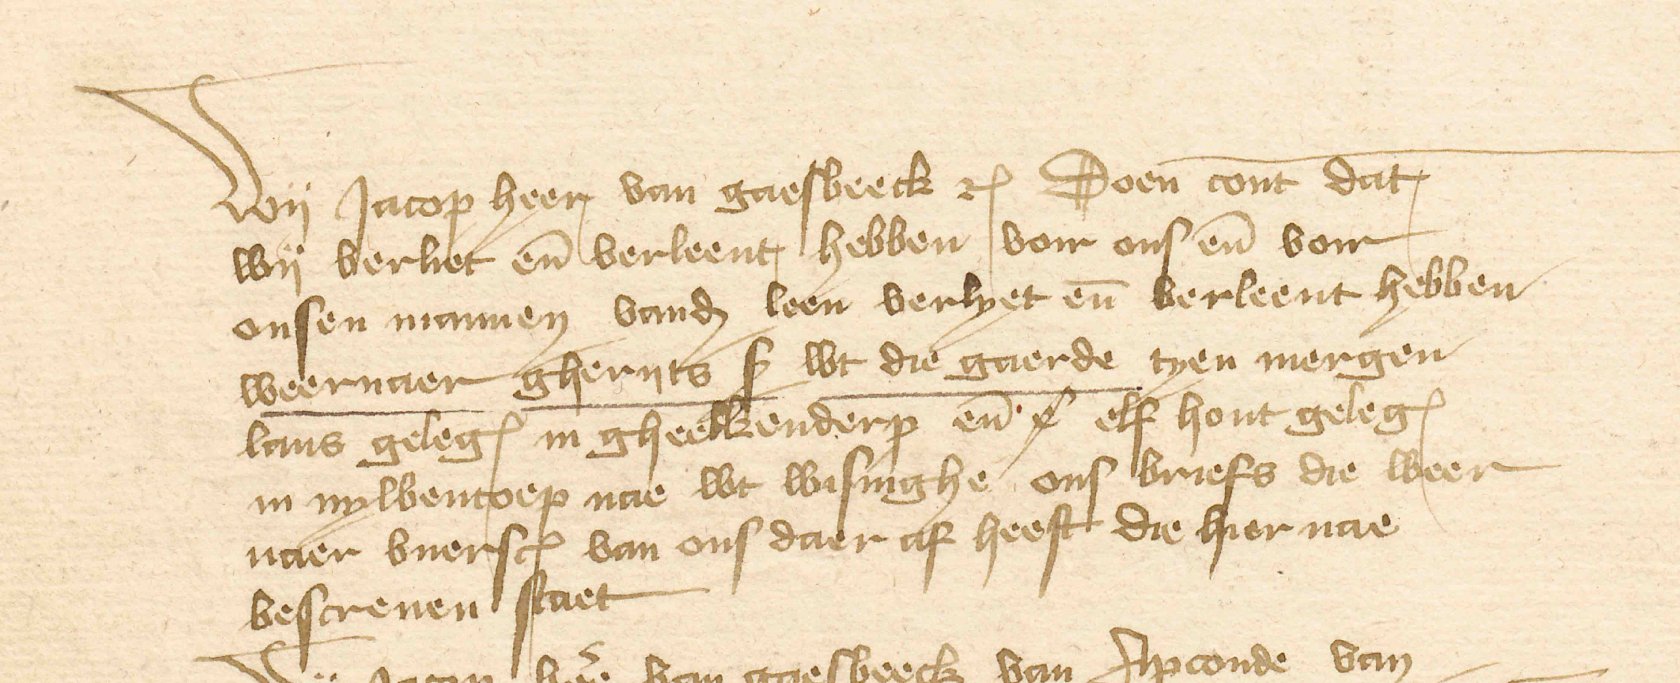 3. Identiek schrift (zie afbeelding 2) in een stuk uit de ambtelijke sfeer van Jacob van Gaasbeek, het zgn. Manboek